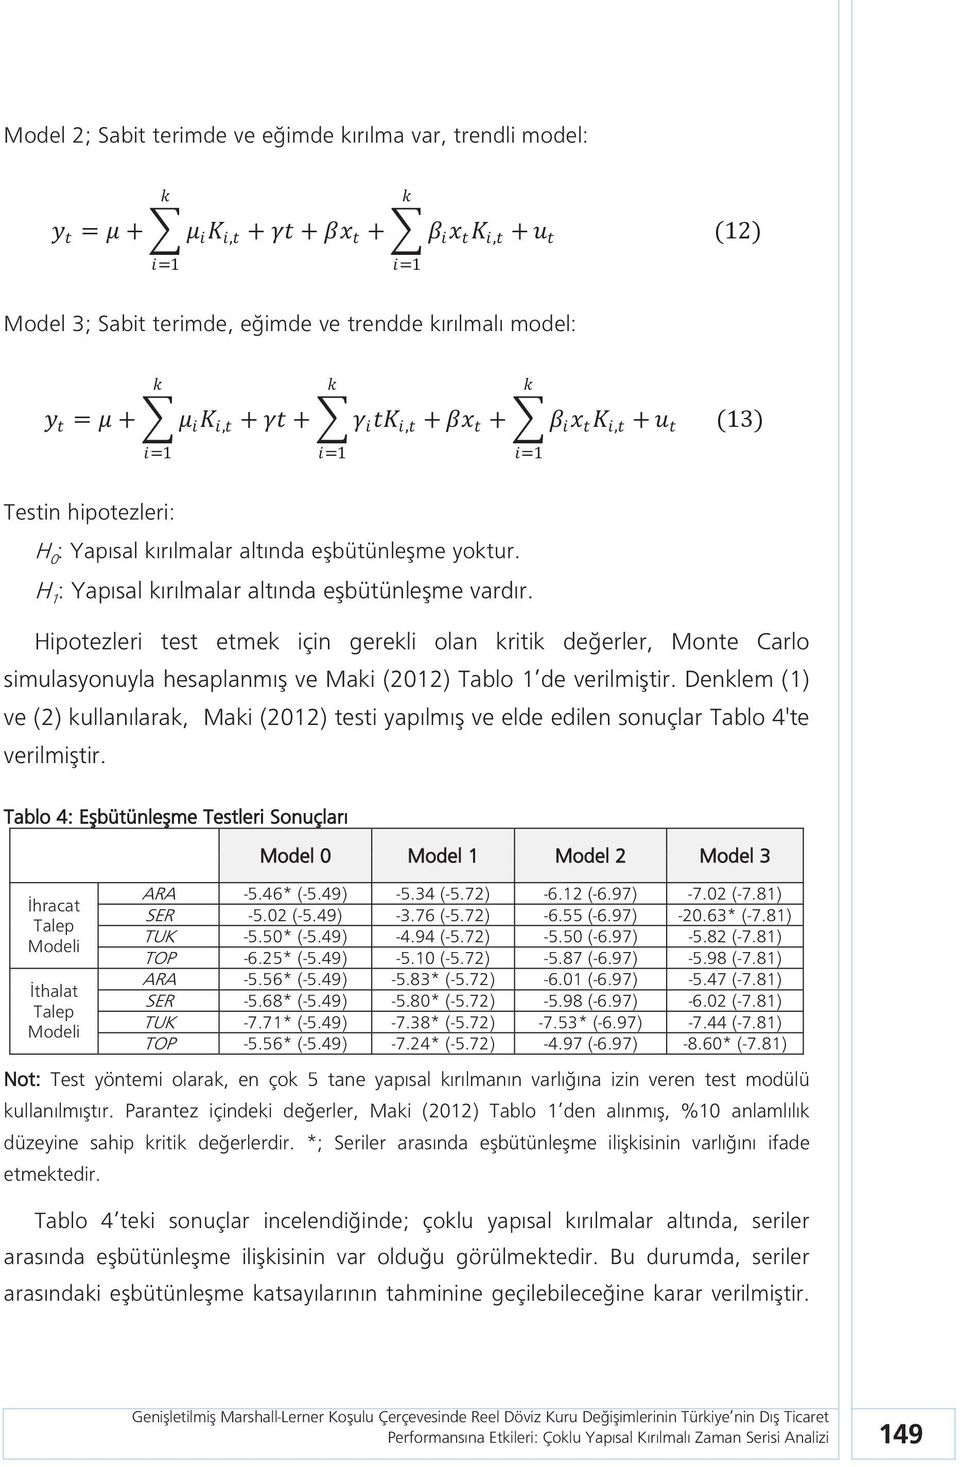 Hipotezleri test etmek için gerekli olan kritik değerler, Monte Carlo simulasyonuyla hesaplanmış ve Maki (2012) Tablo 1 de verilmiştir.